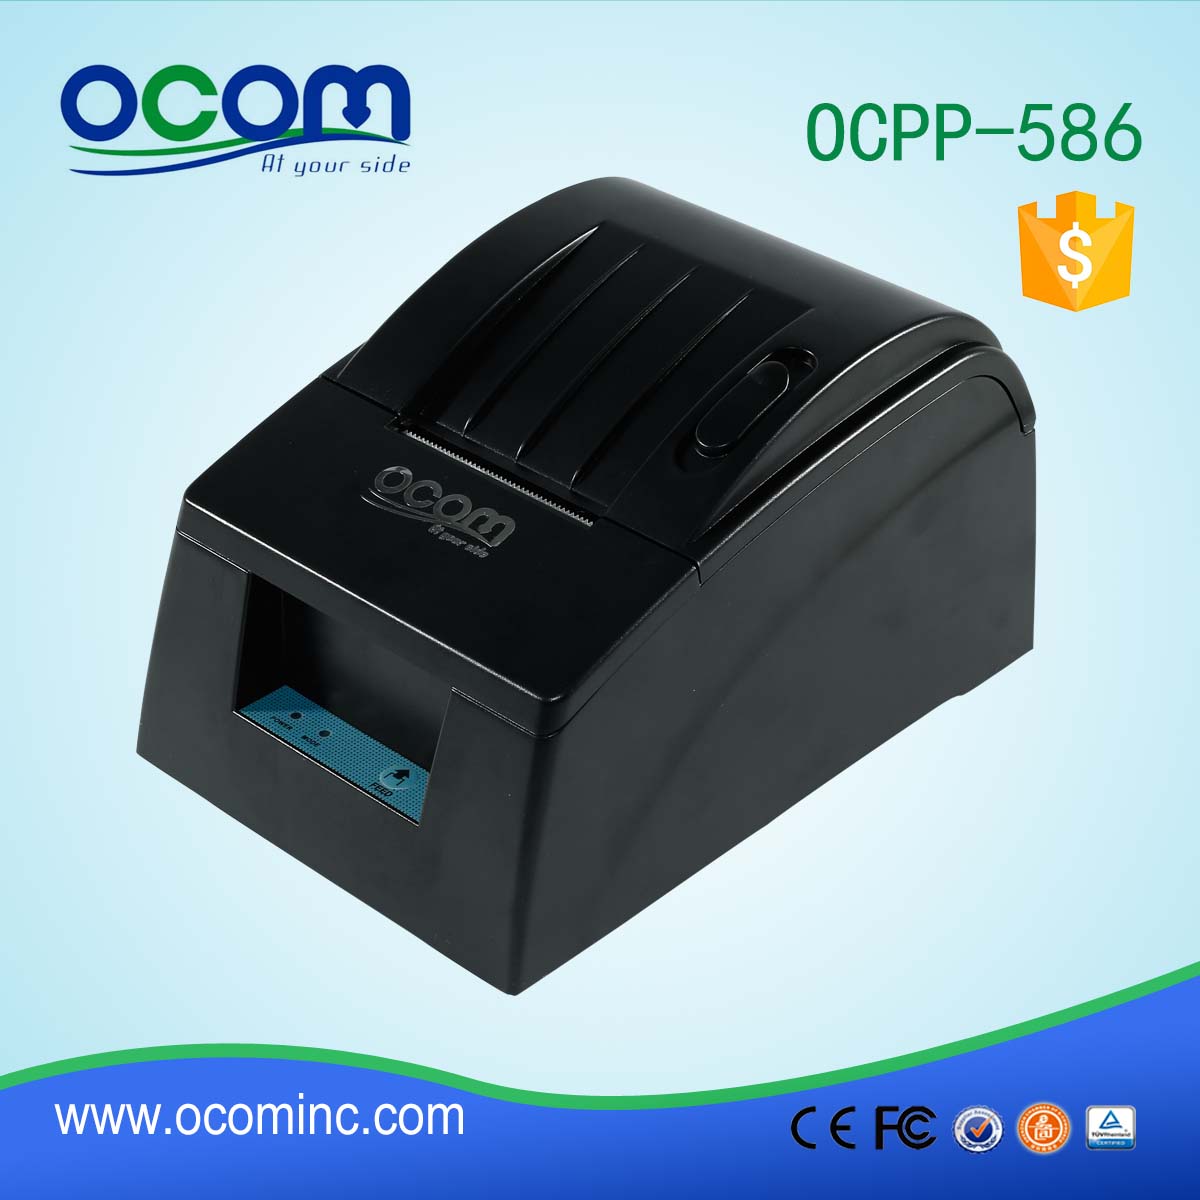 Aufbewahrungs-Drucker OCPP-586